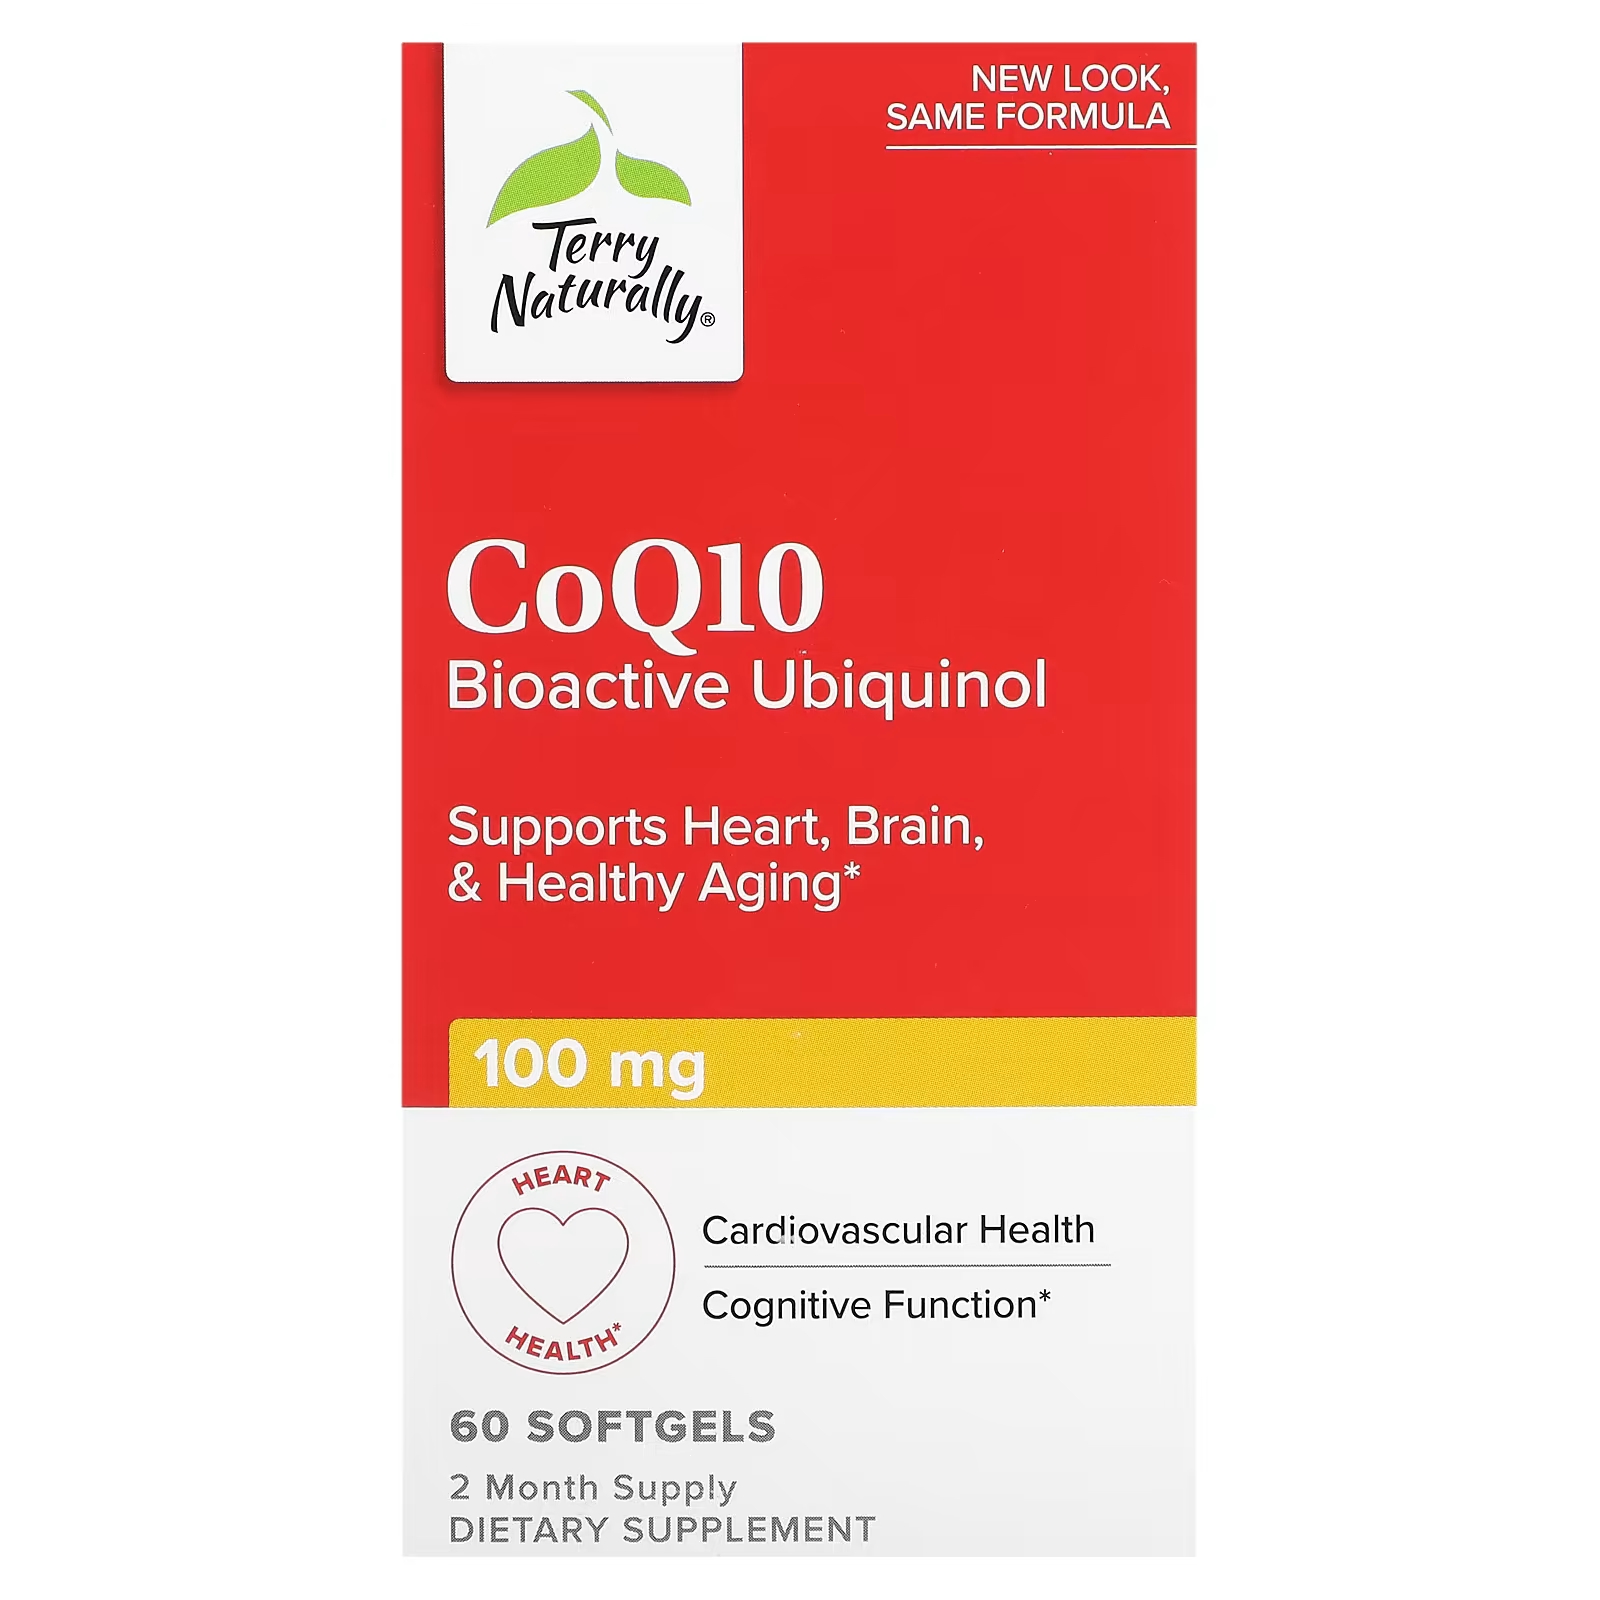 nordic naturals coq10 убихинол 100 мг 60 мягких таблеток Биоактивный убихинол Terry Naturally CoQ10, 60 мягких таблеток